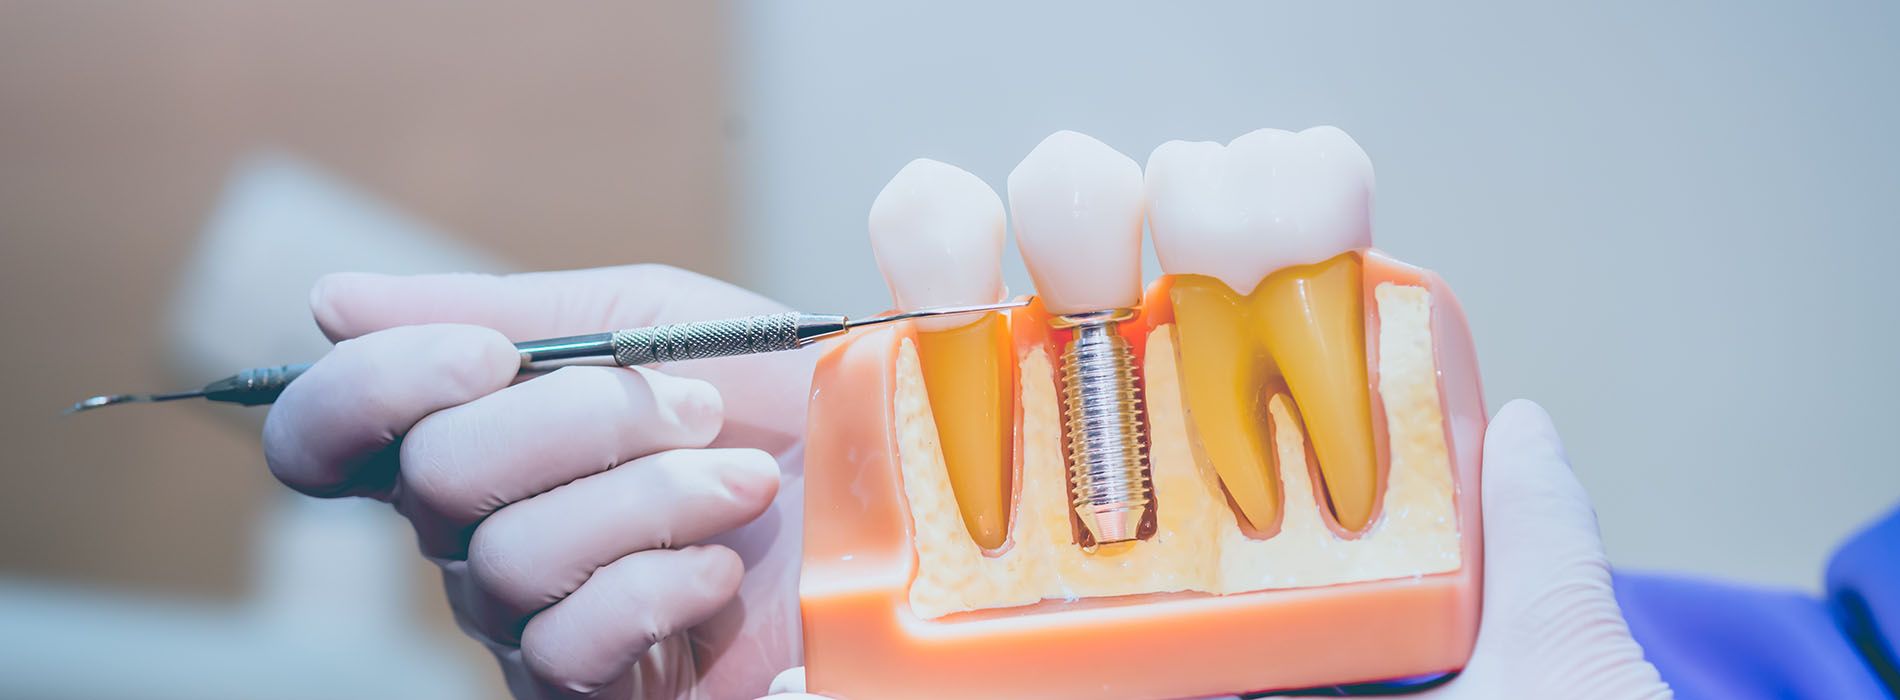 Pauly Dental | Dentures, Preventative Program and All-on-4 reg 